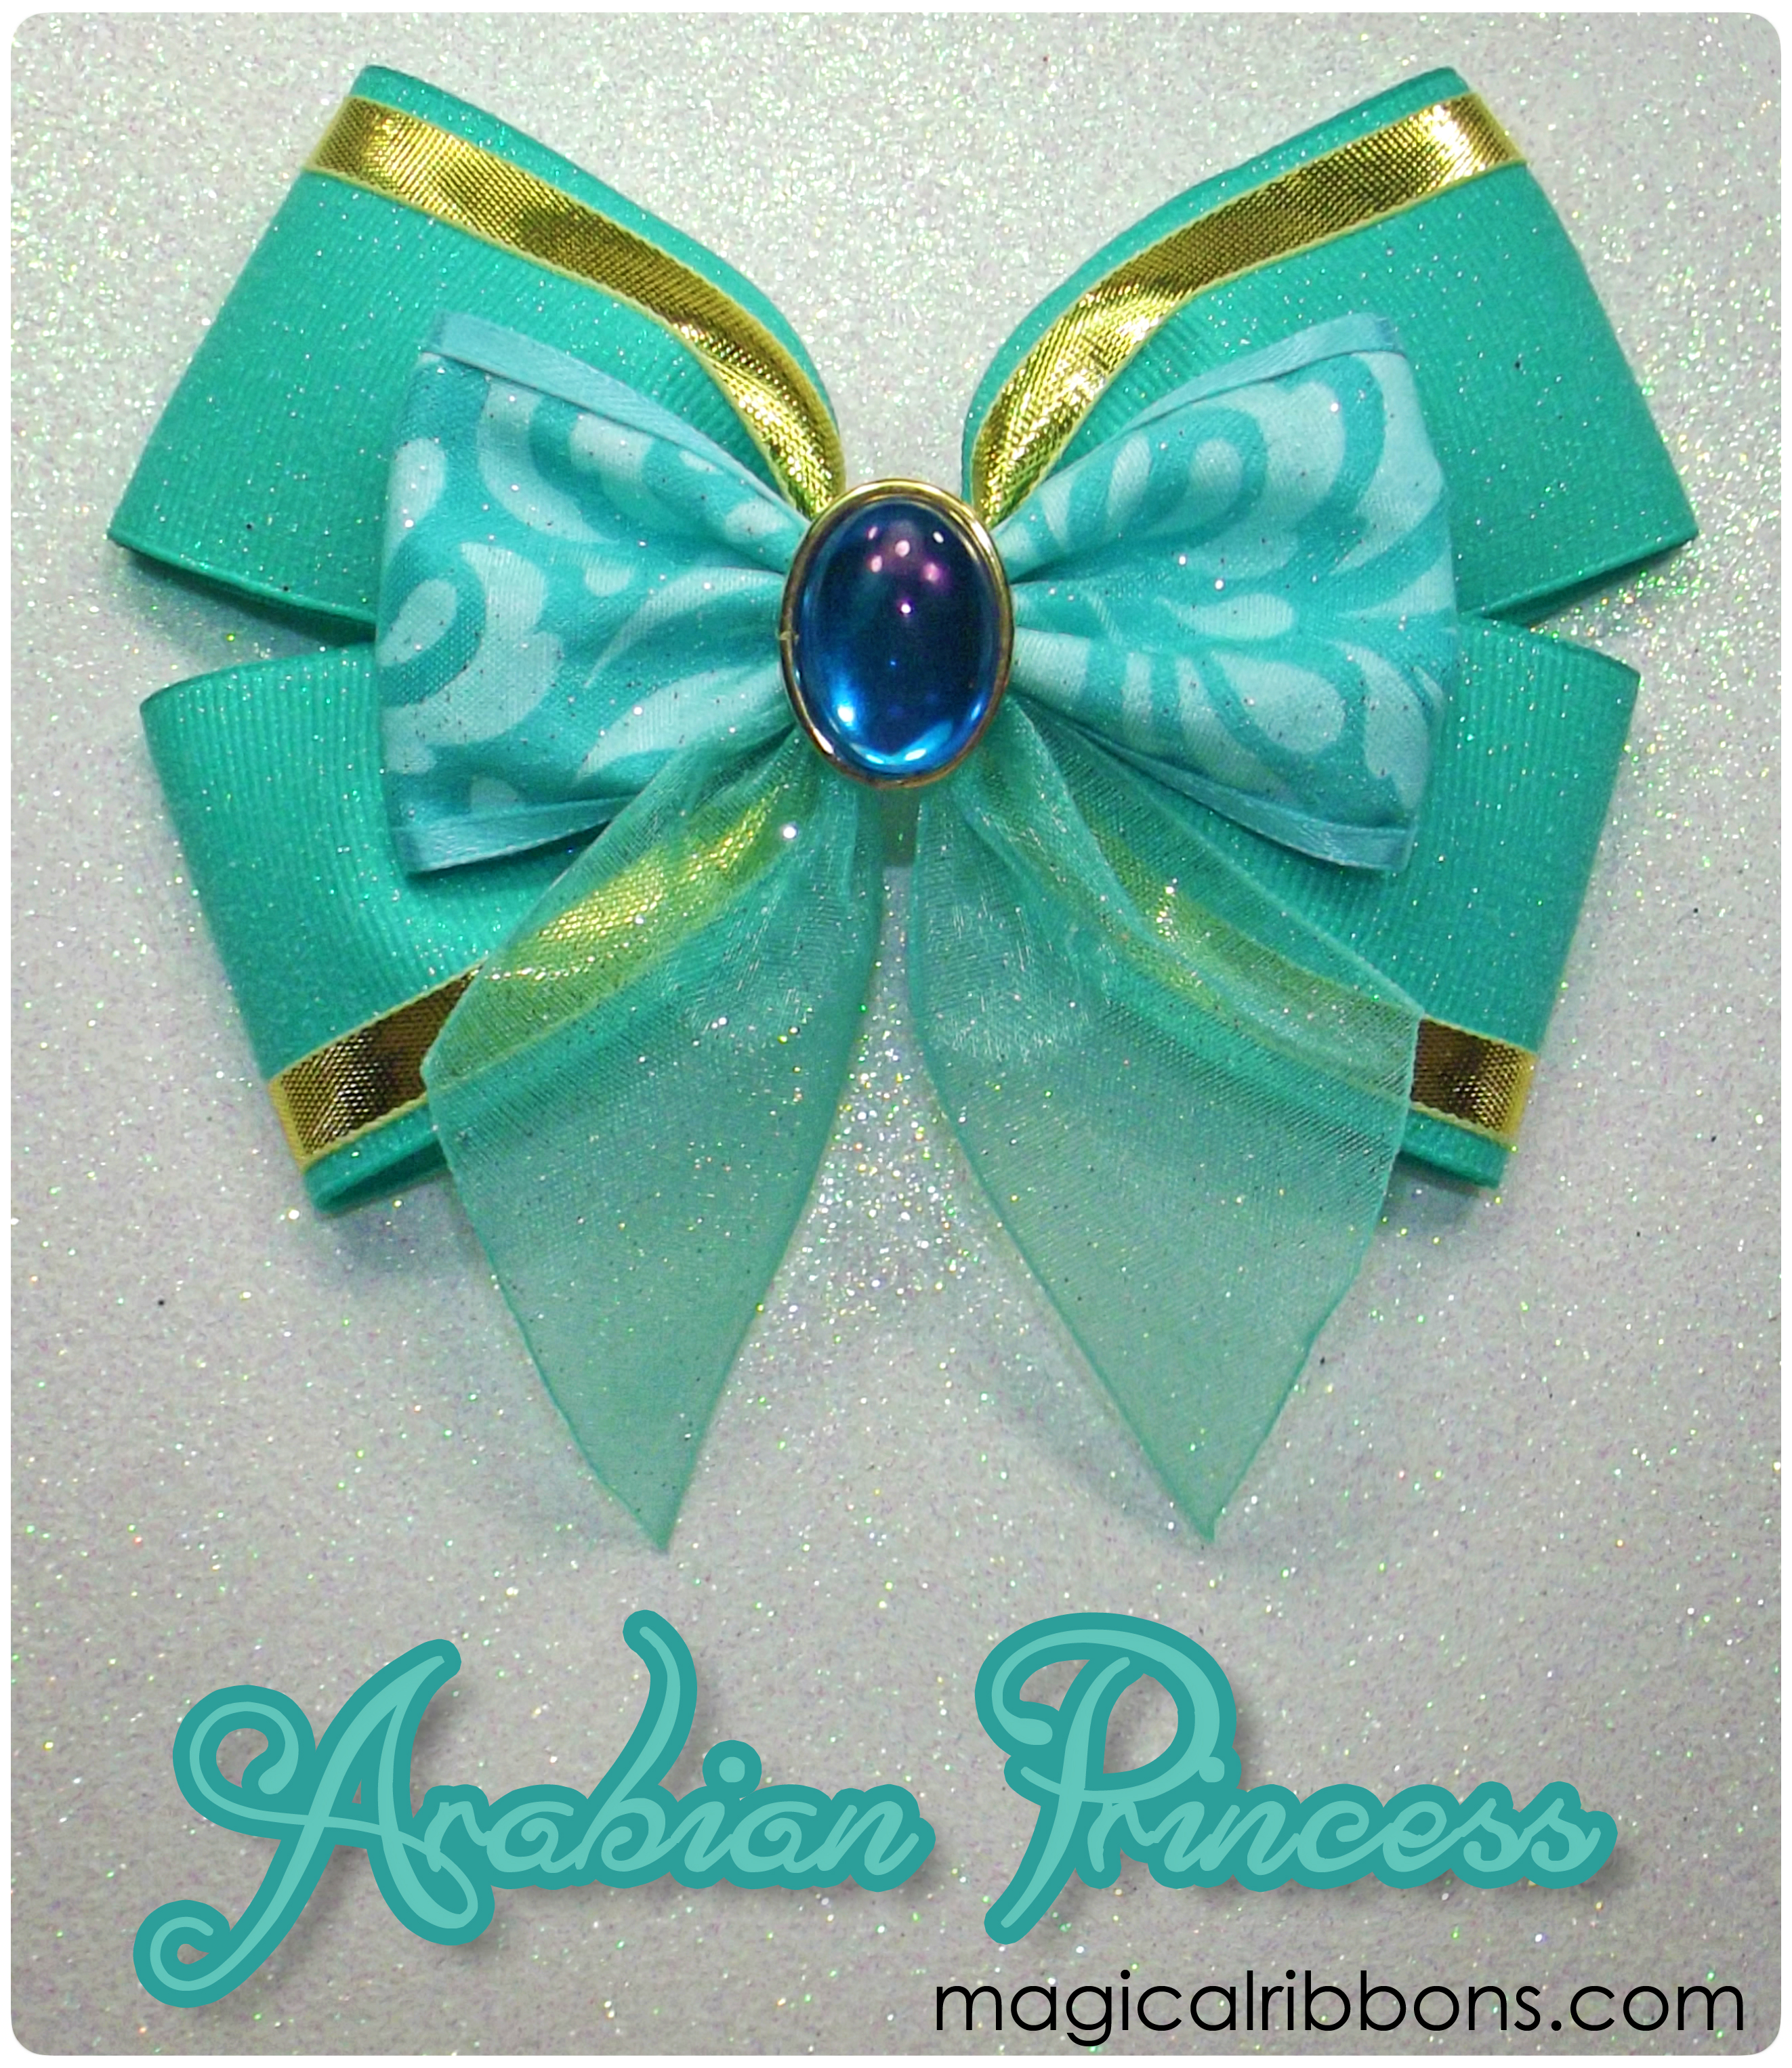 RTS Arabian Princess Bow – Magical Ribbons